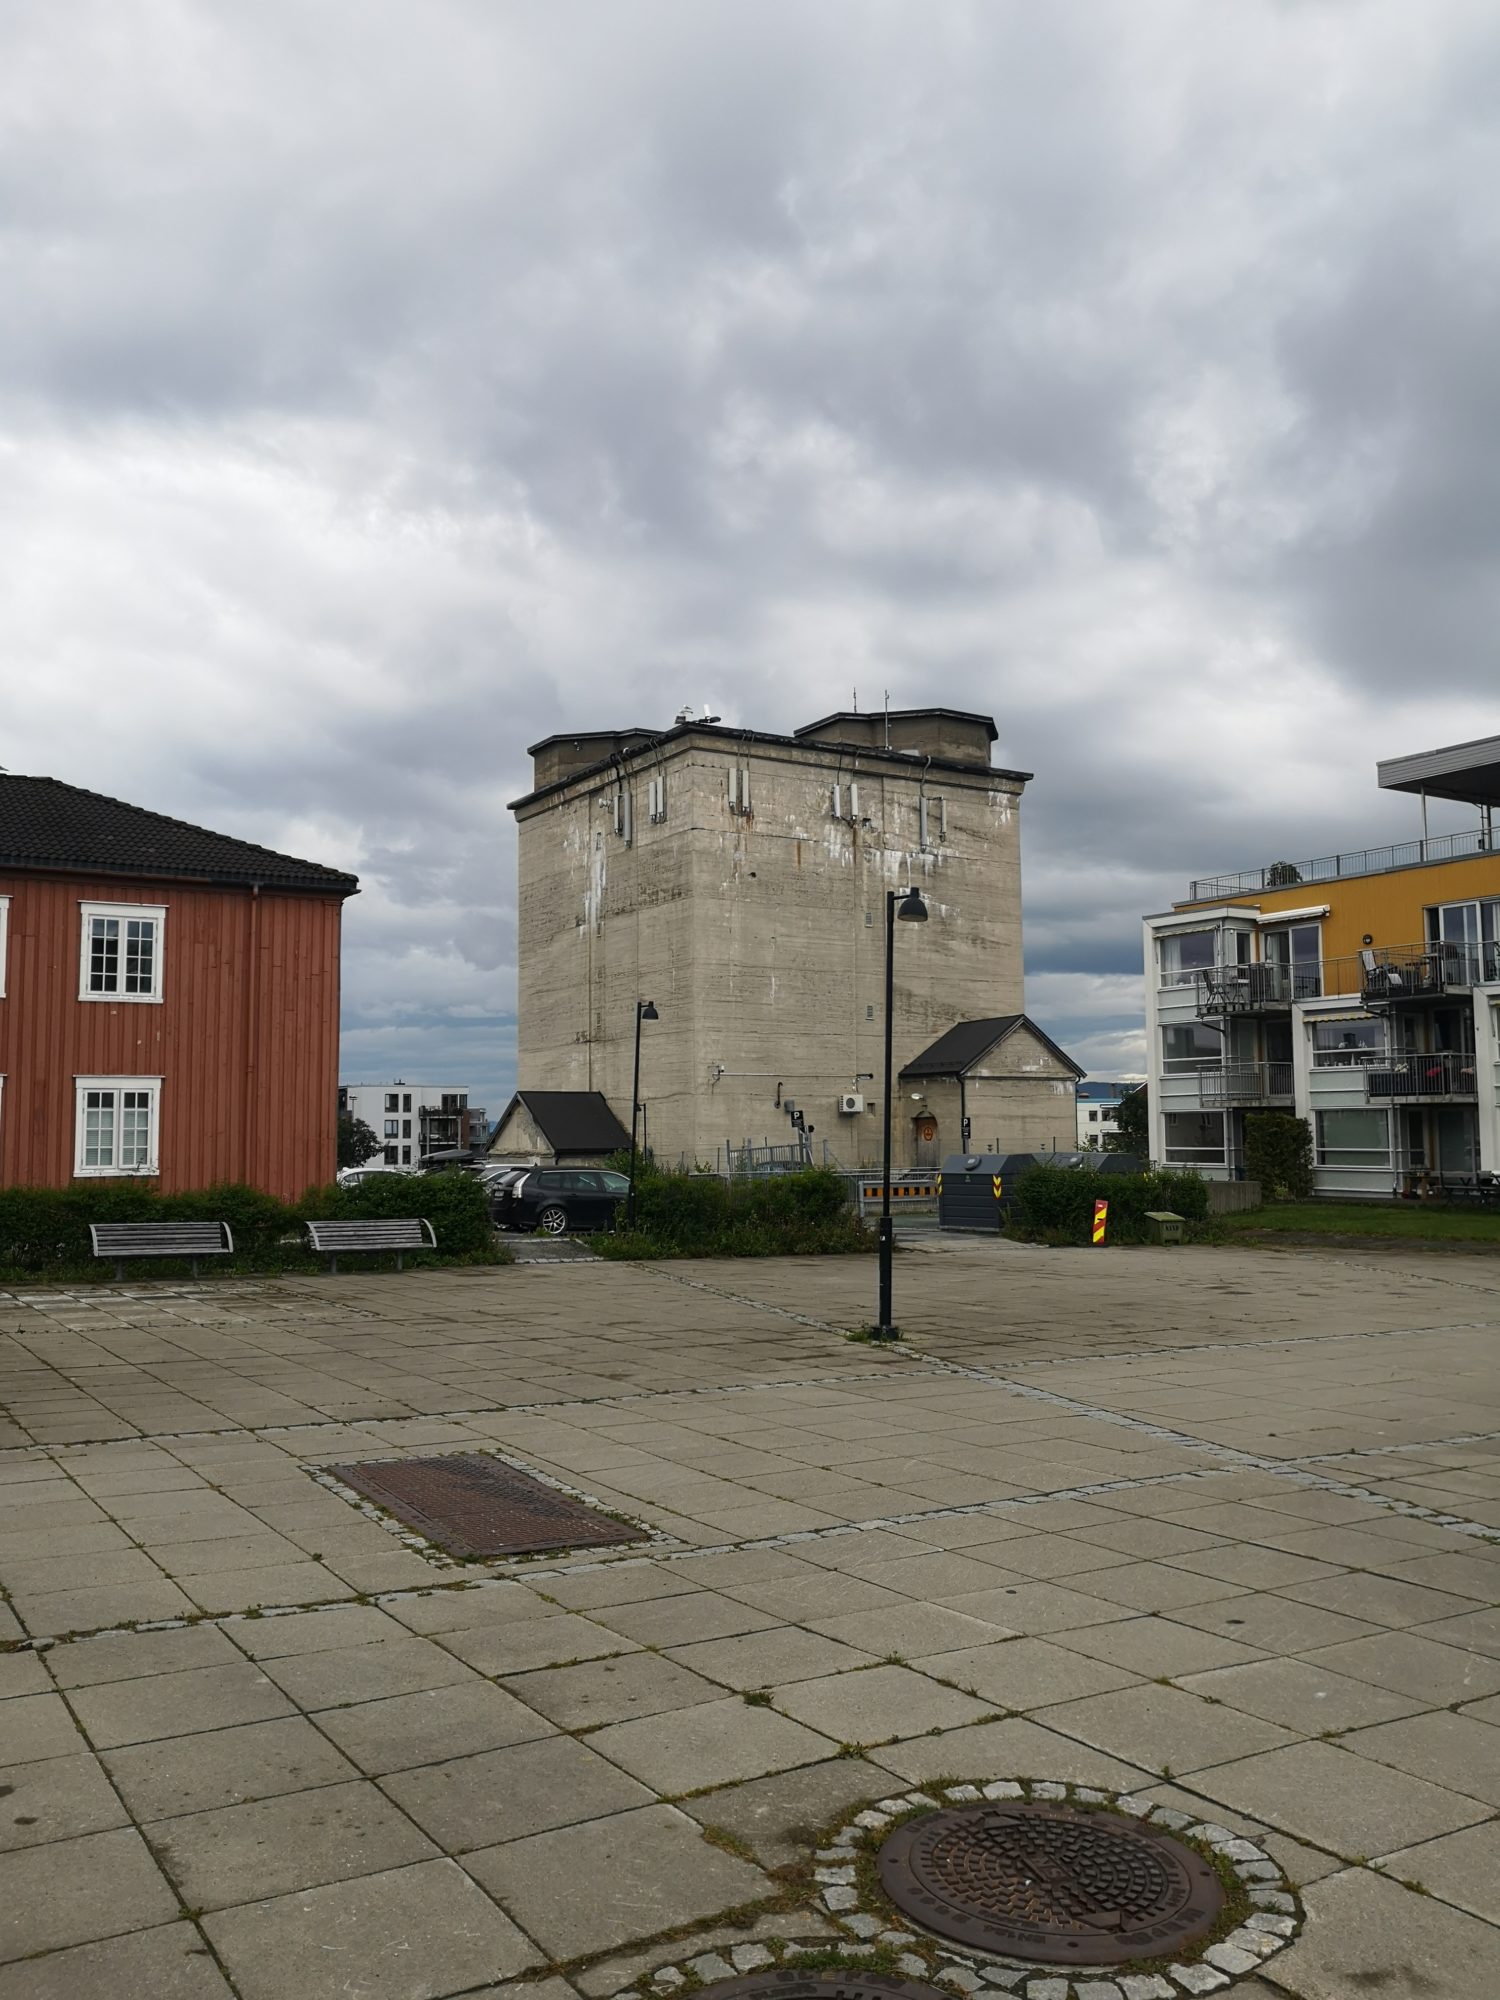 Lager- og tilfluktsbunker med plattform for luftvernkanoner på toppen. Til venstre ligger et av forlegningshusene, til høyre ligger en nyoppført
boligblokk. Foto: Kristoffer E. Grini